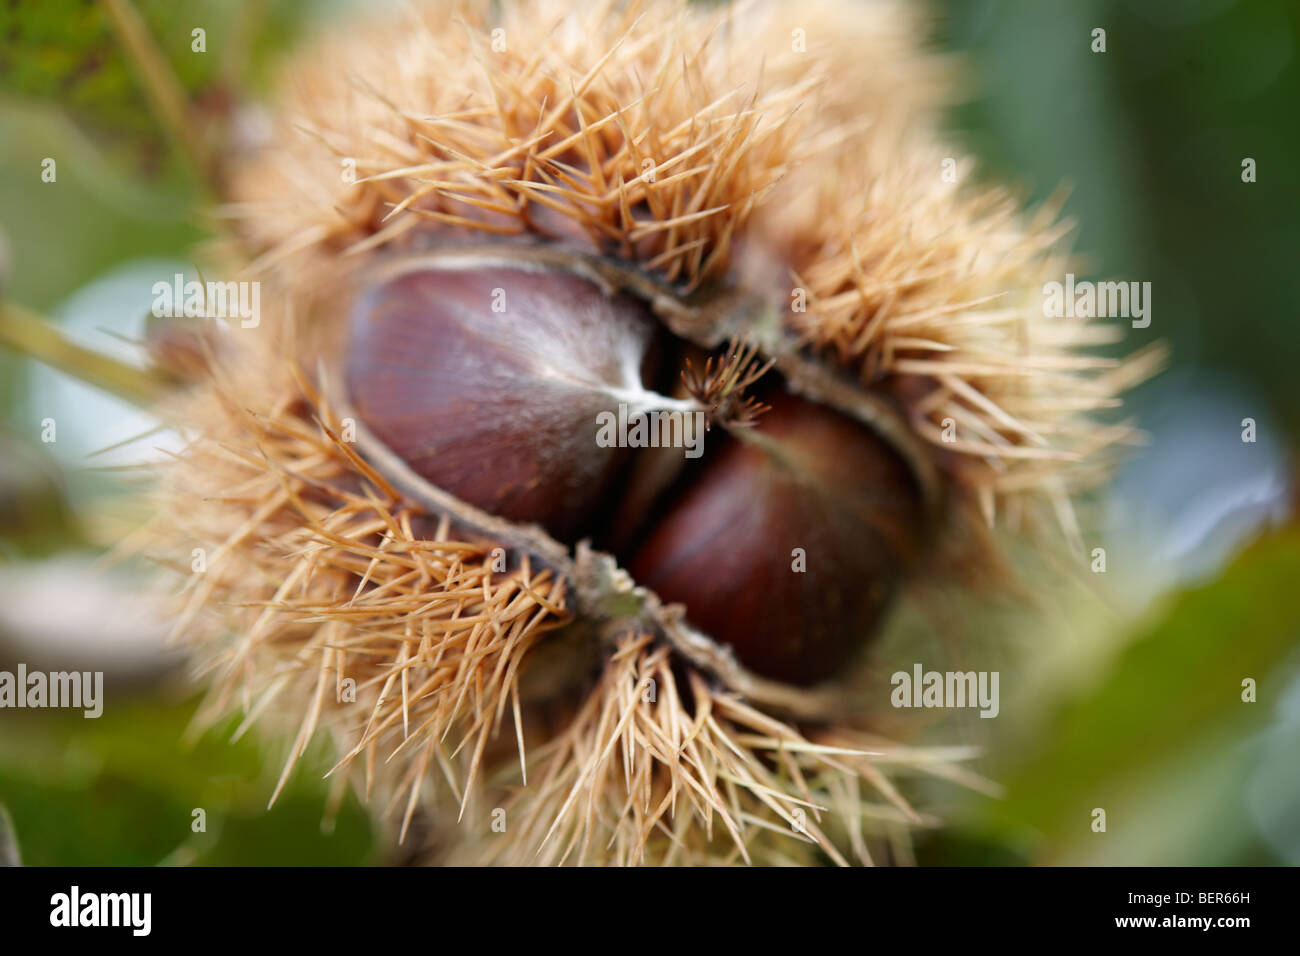 Onu fresche raccolte a frutto di castagno appeso a un albero (Castanea sativa) Foto Stock